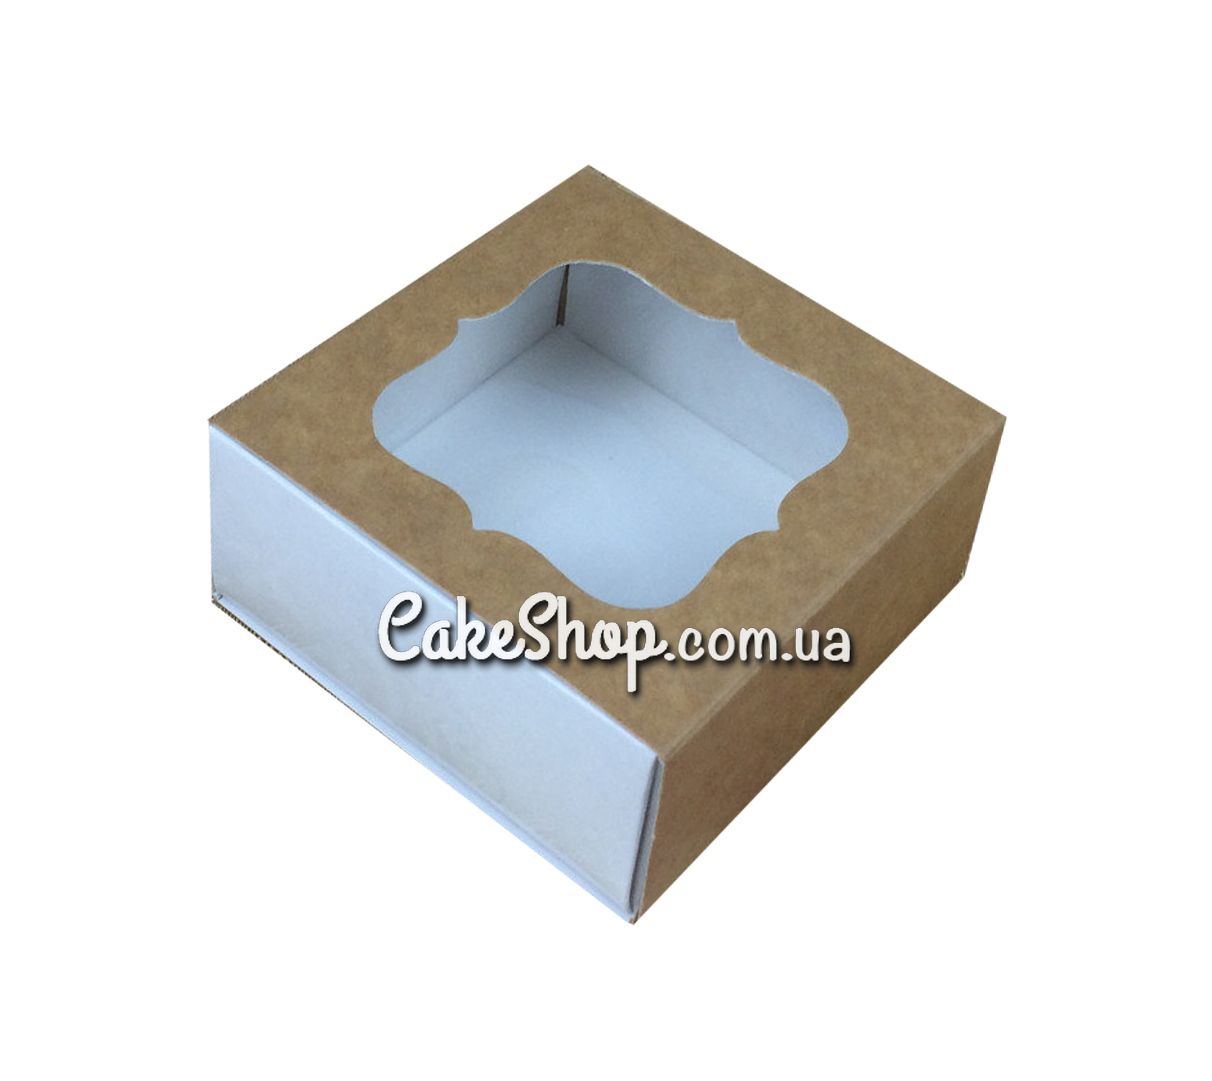 ⋗ Коробка для конфет, изделий Hand Made, мыла ручной работы Крафт, 8х8х3,5 см купить в Украине ➛ CakeShop.com.ua, фото